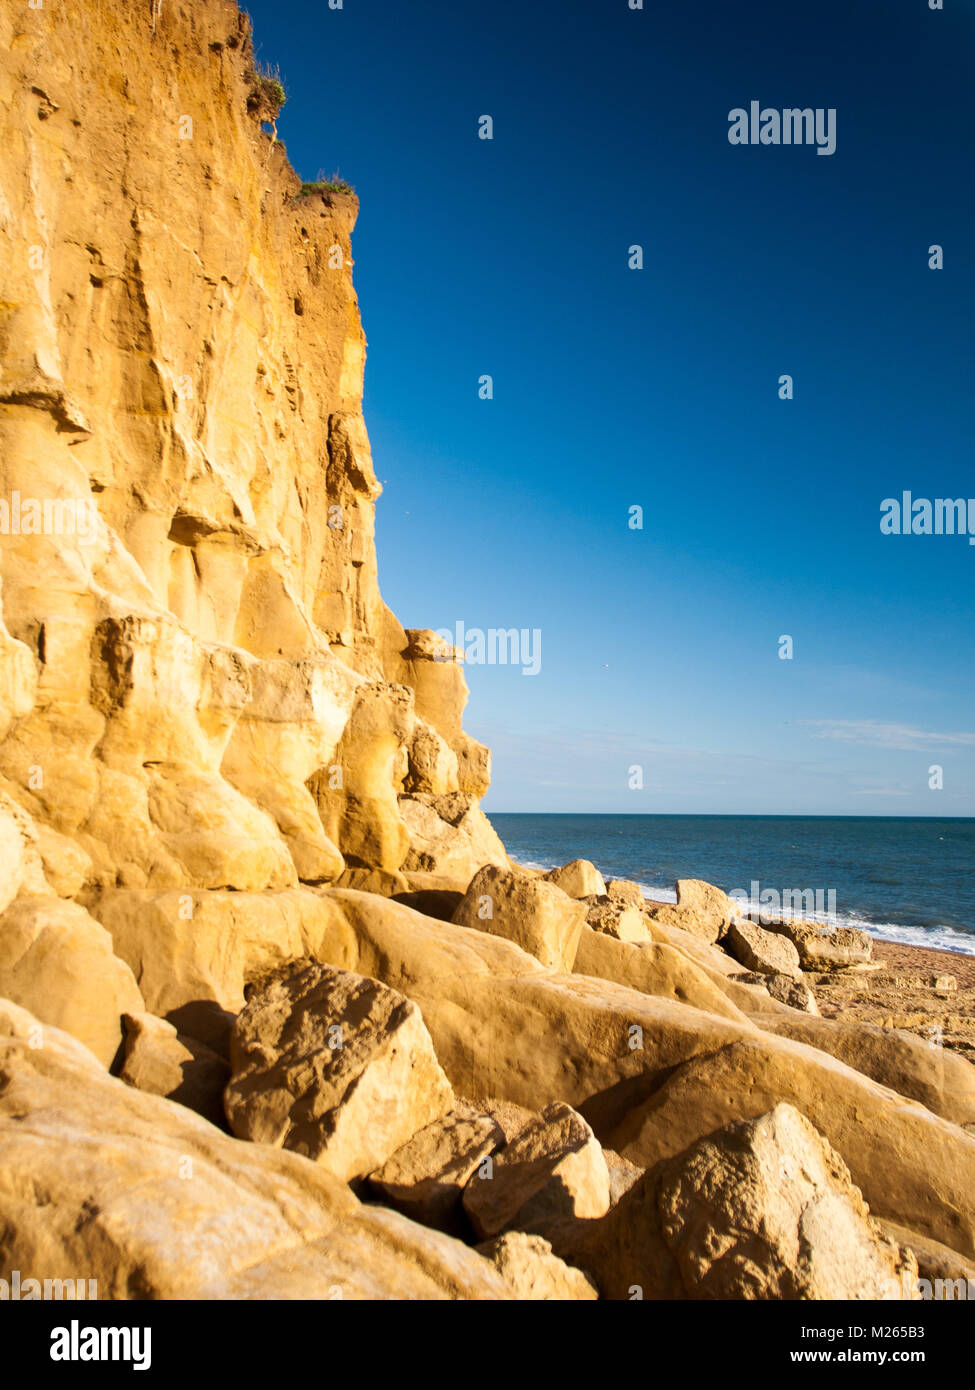 Le soleil brille sur les falaises de la plage d'or de la Ruche, frais d'une chute de roches, à Burton Bradstock sur la côte jurassique du Dorset. Banque D'Images